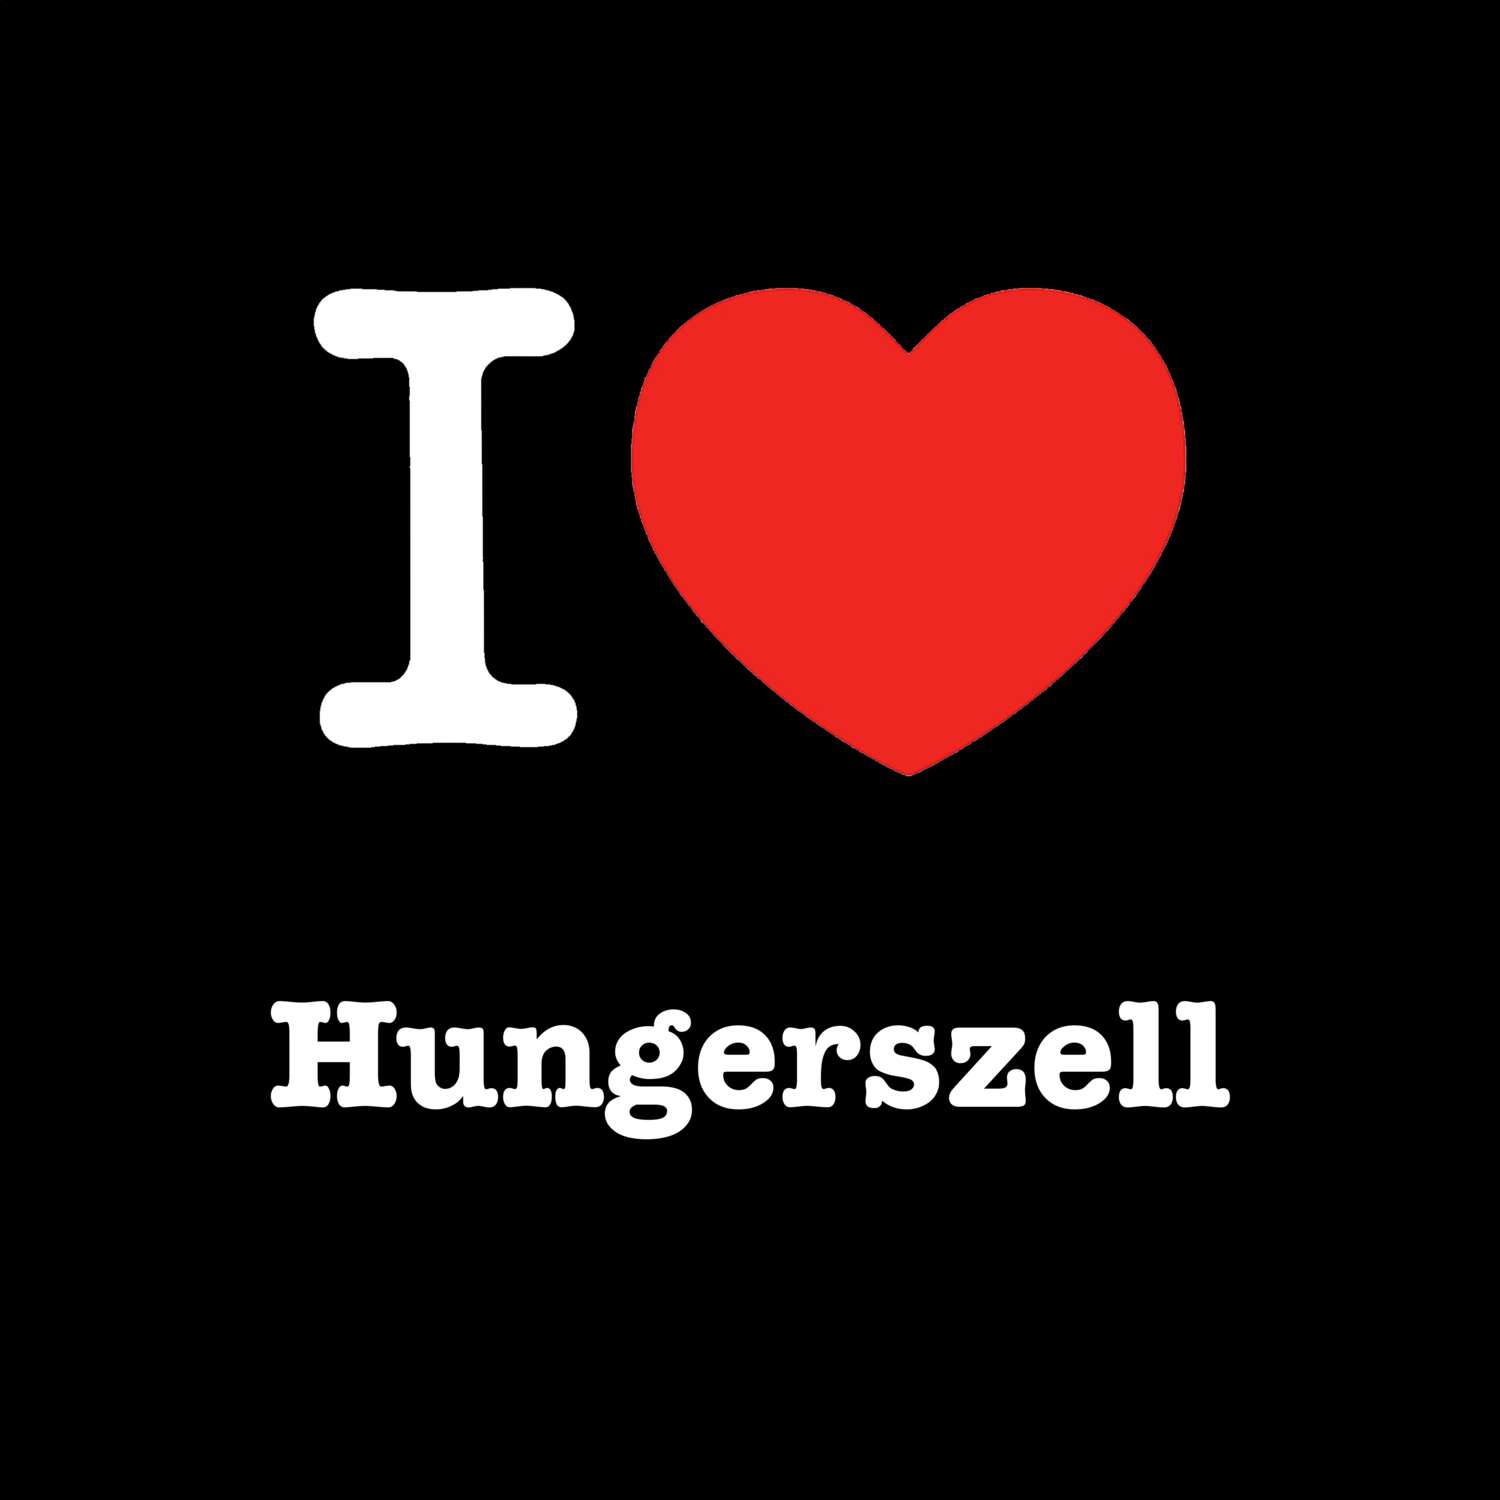 Hungerszell T-Shirt »I love«